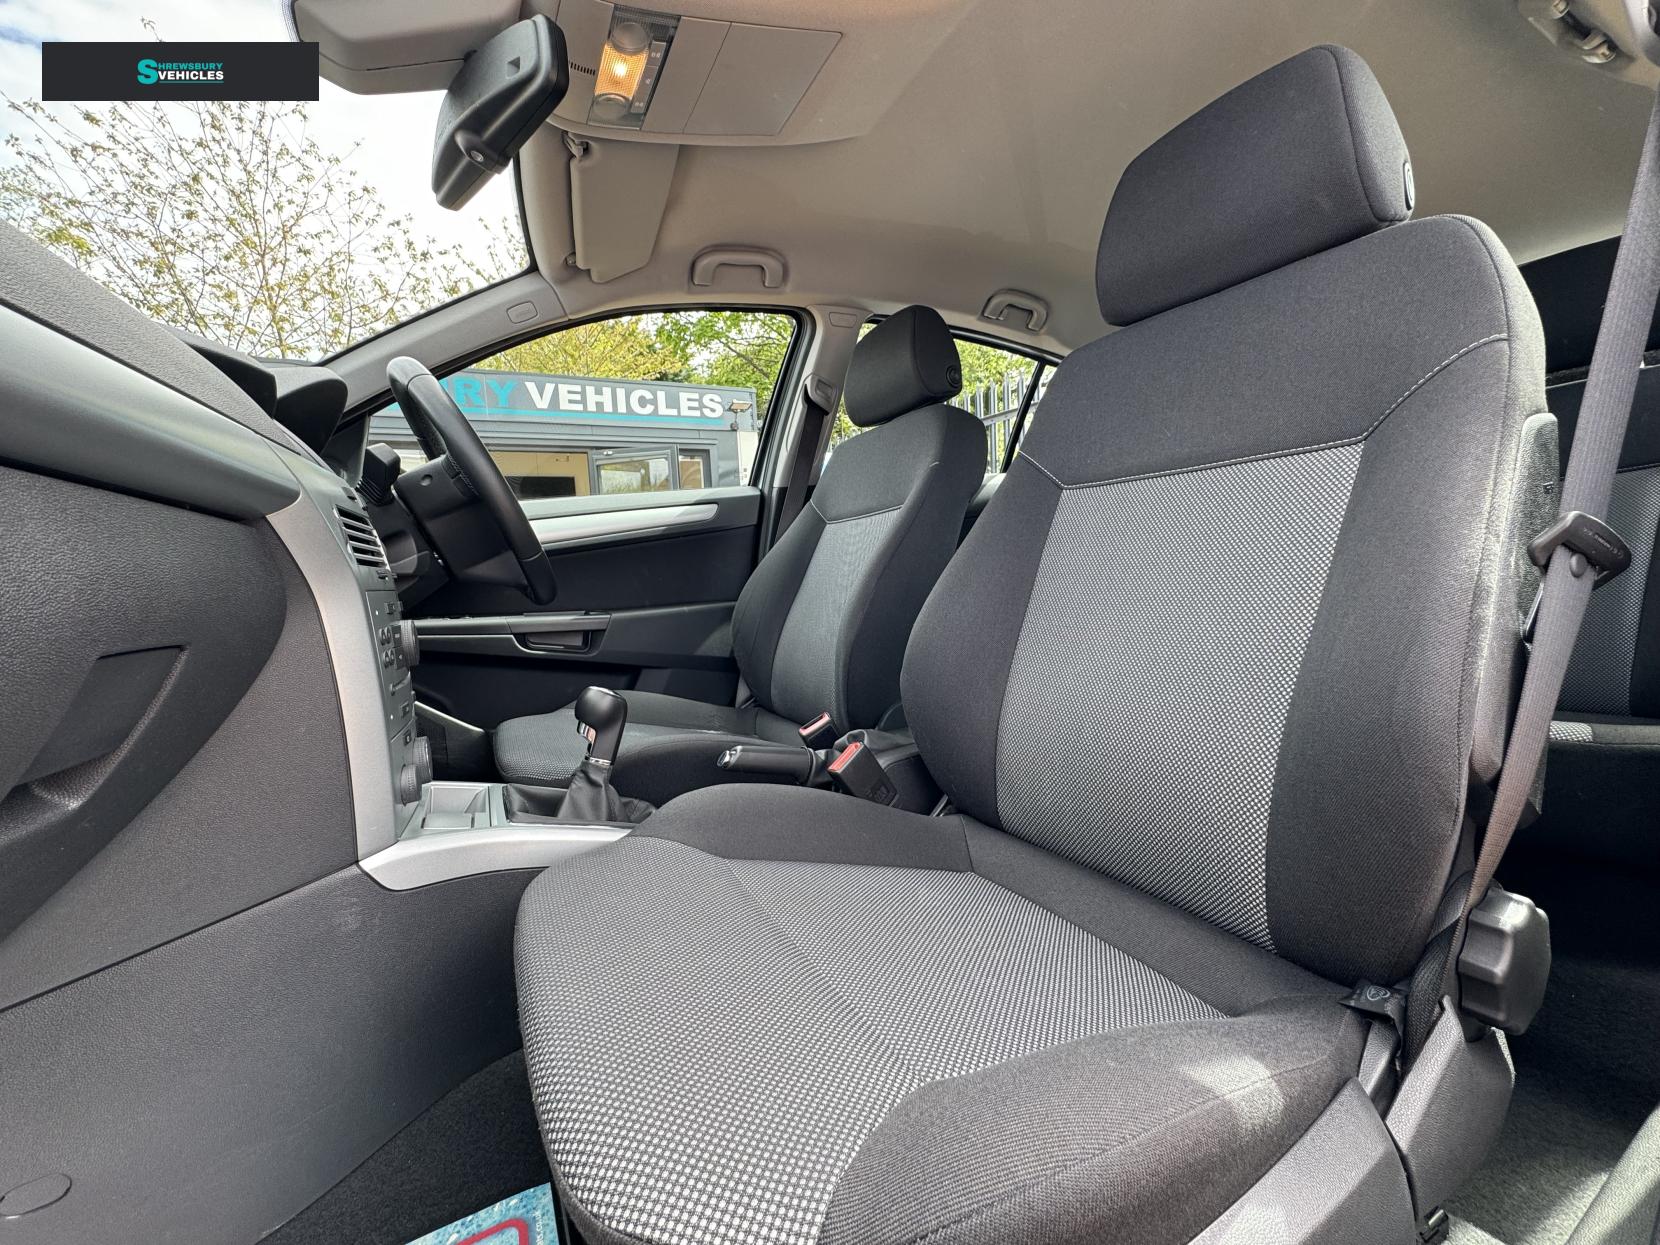 Vauxhall Astra 1.4i 16v Active Hatchback 5dr Petrol Manual (146 g/km, 89 bhp)